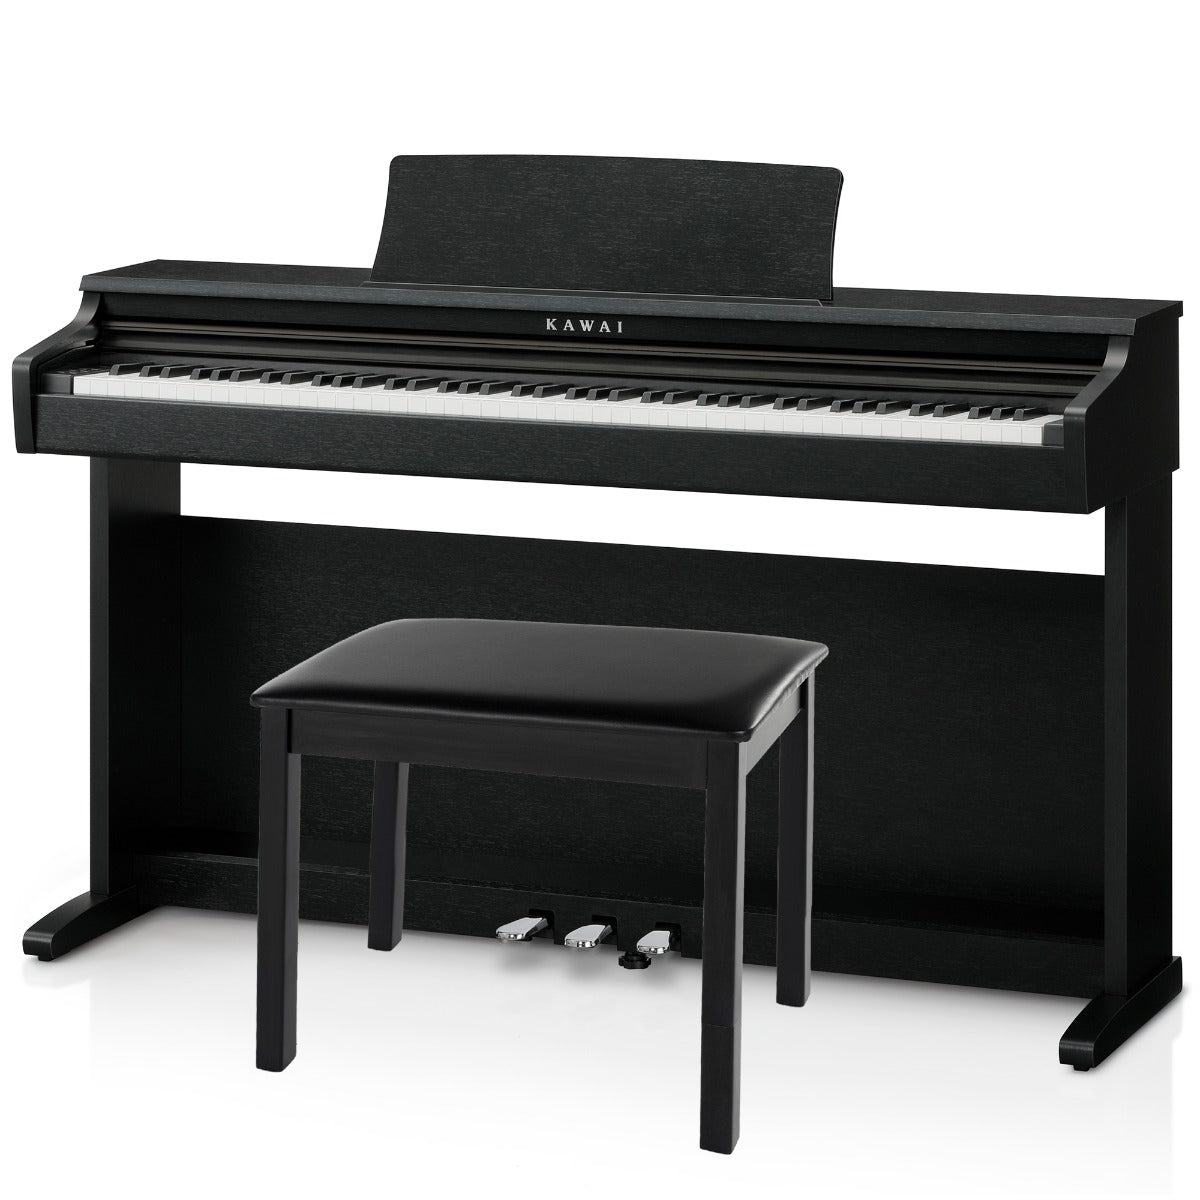 Image of Kawai KDP120 Digital Piano - Black with bench